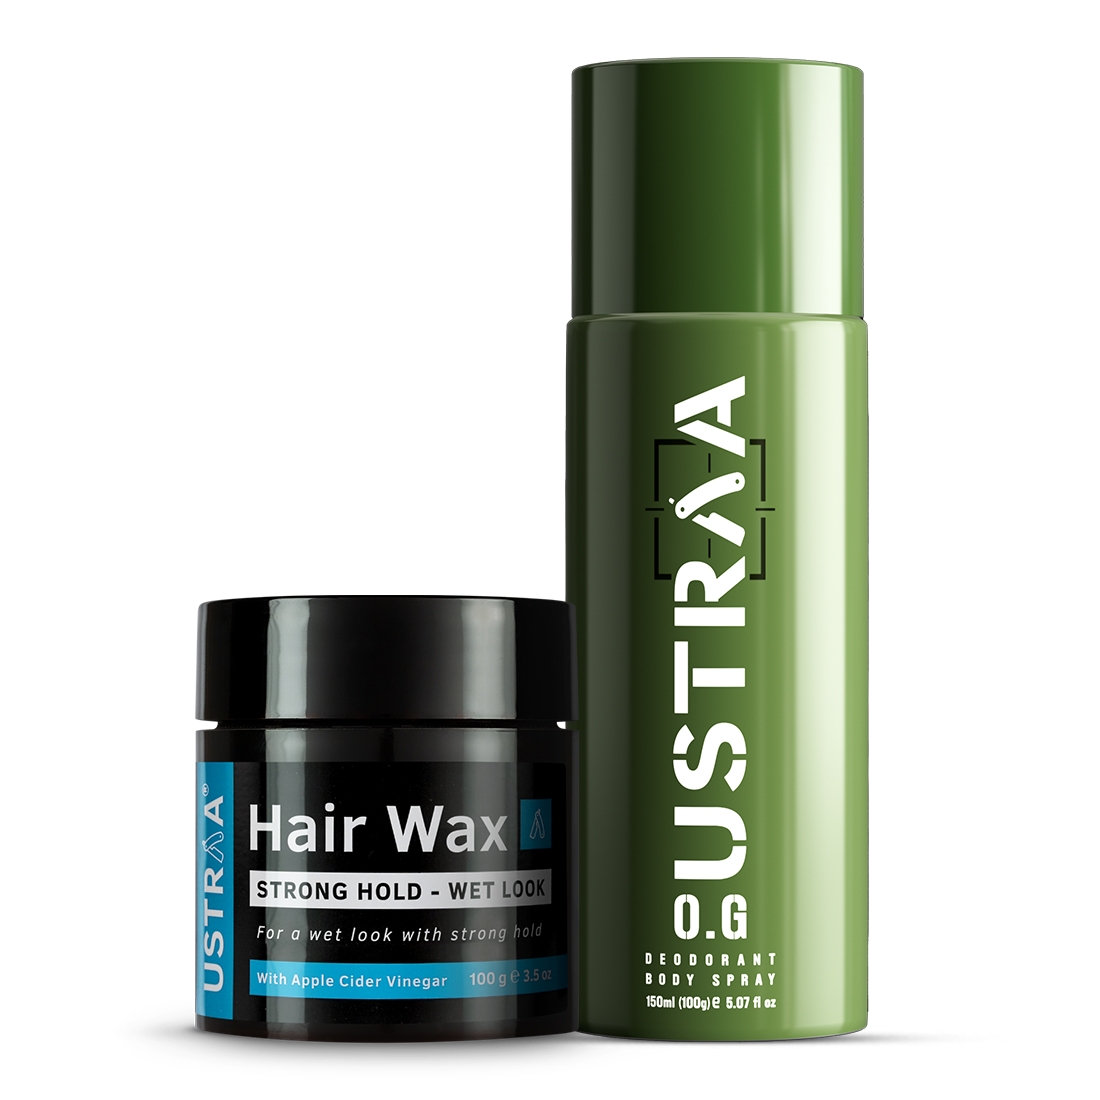 Ustraa | Ustraa O.G Deodorant - 150ml & Hair Wax Strong Hold Wet Look - 100g Combo 0